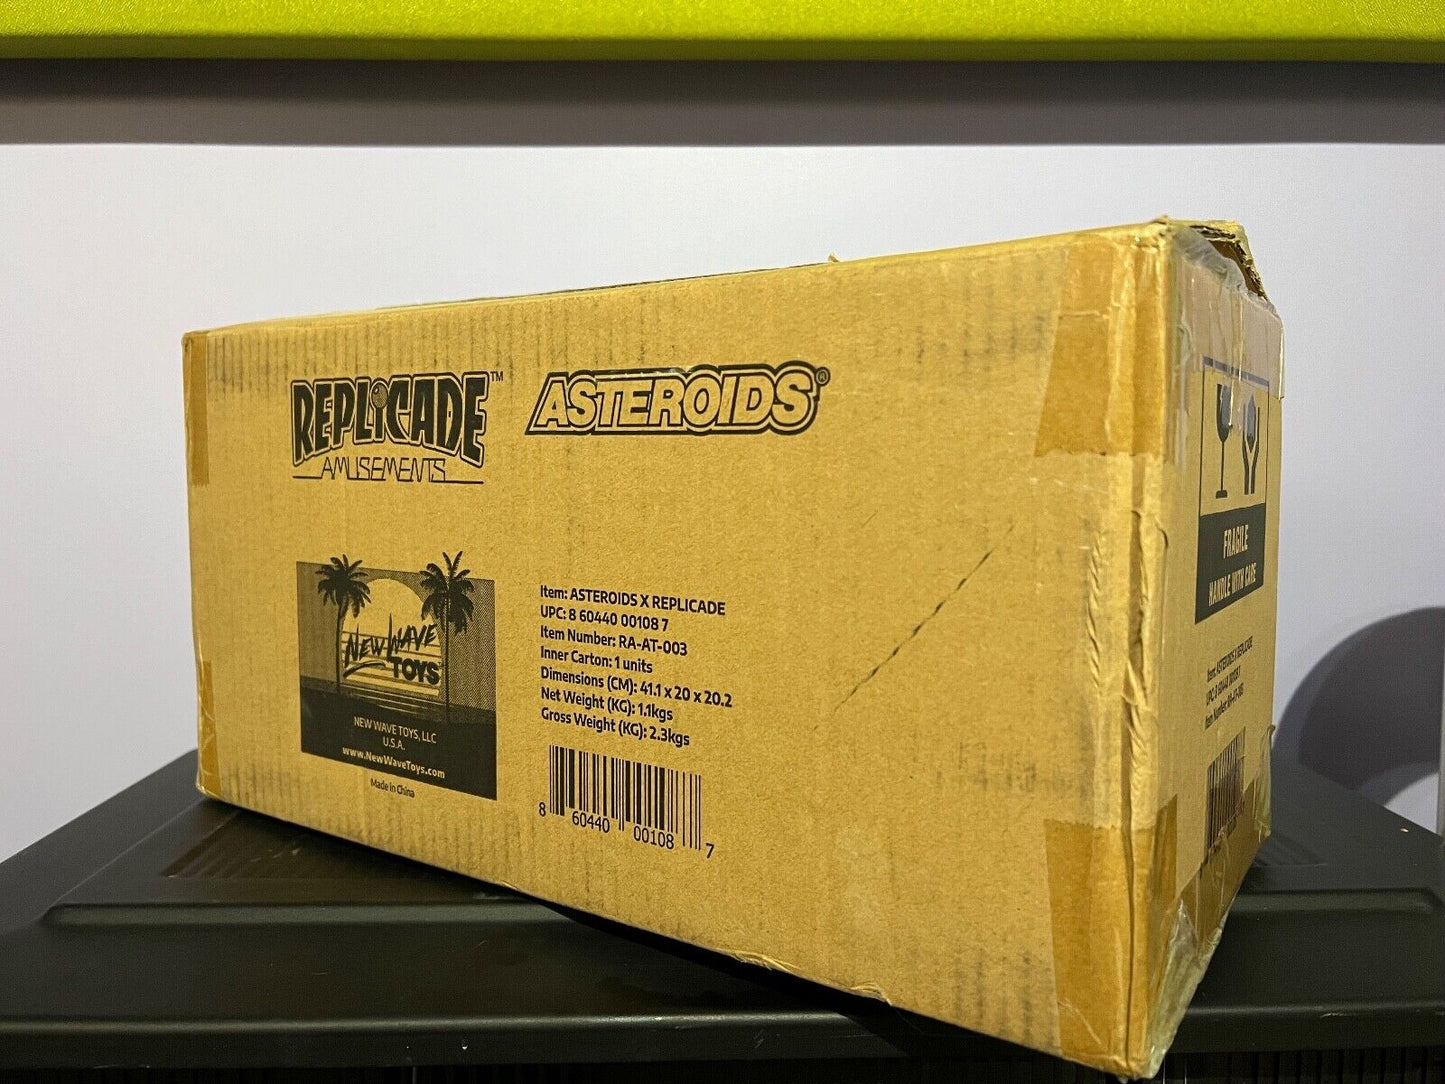 New Wave Toys Atari Asteroids x RepliCade 1/6 Scale Arcade Cabinet